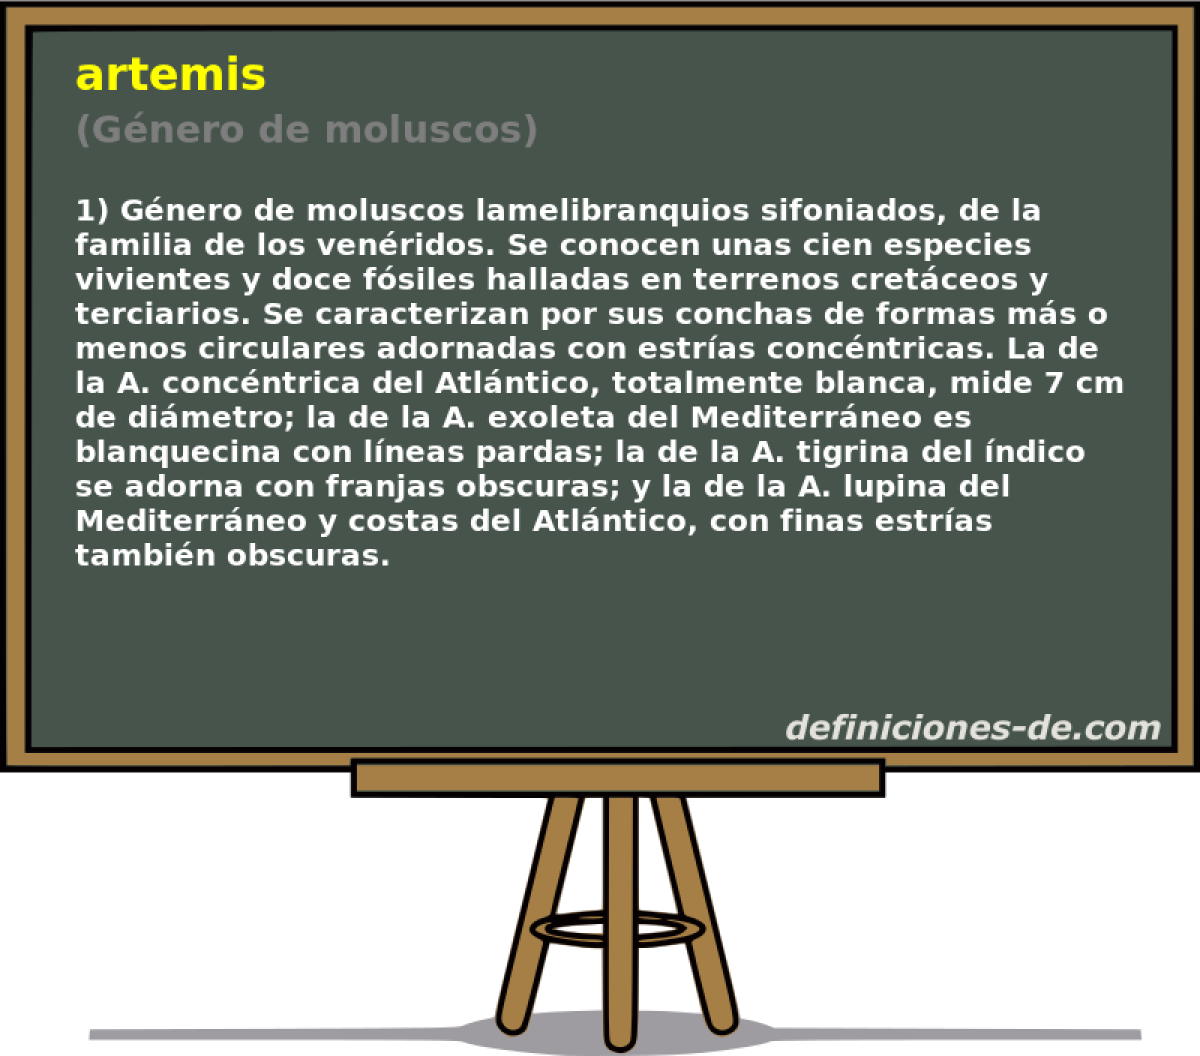 artemis (Gnero de moluscos)